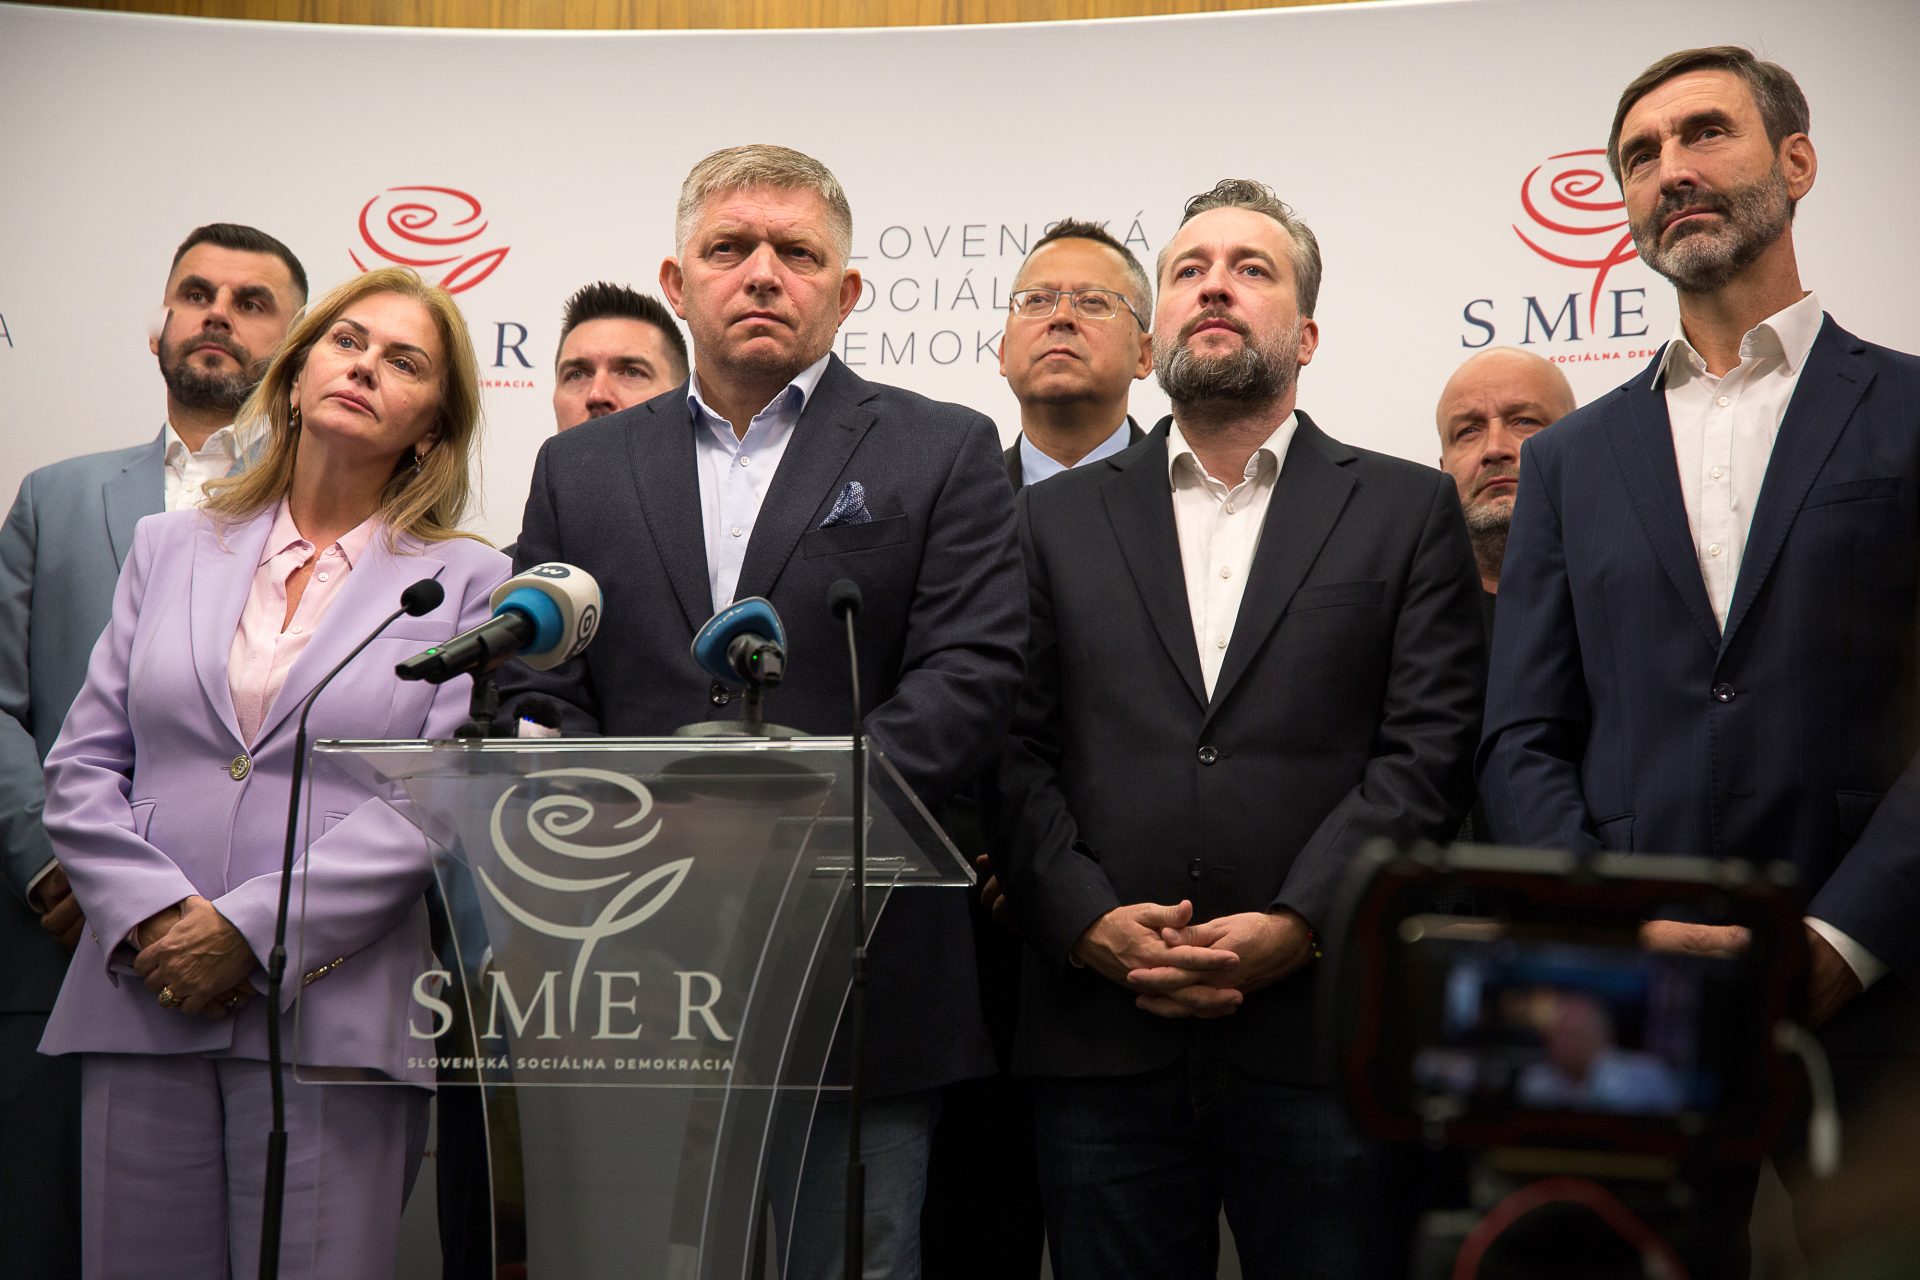 Le parti Smer en Slovaquie